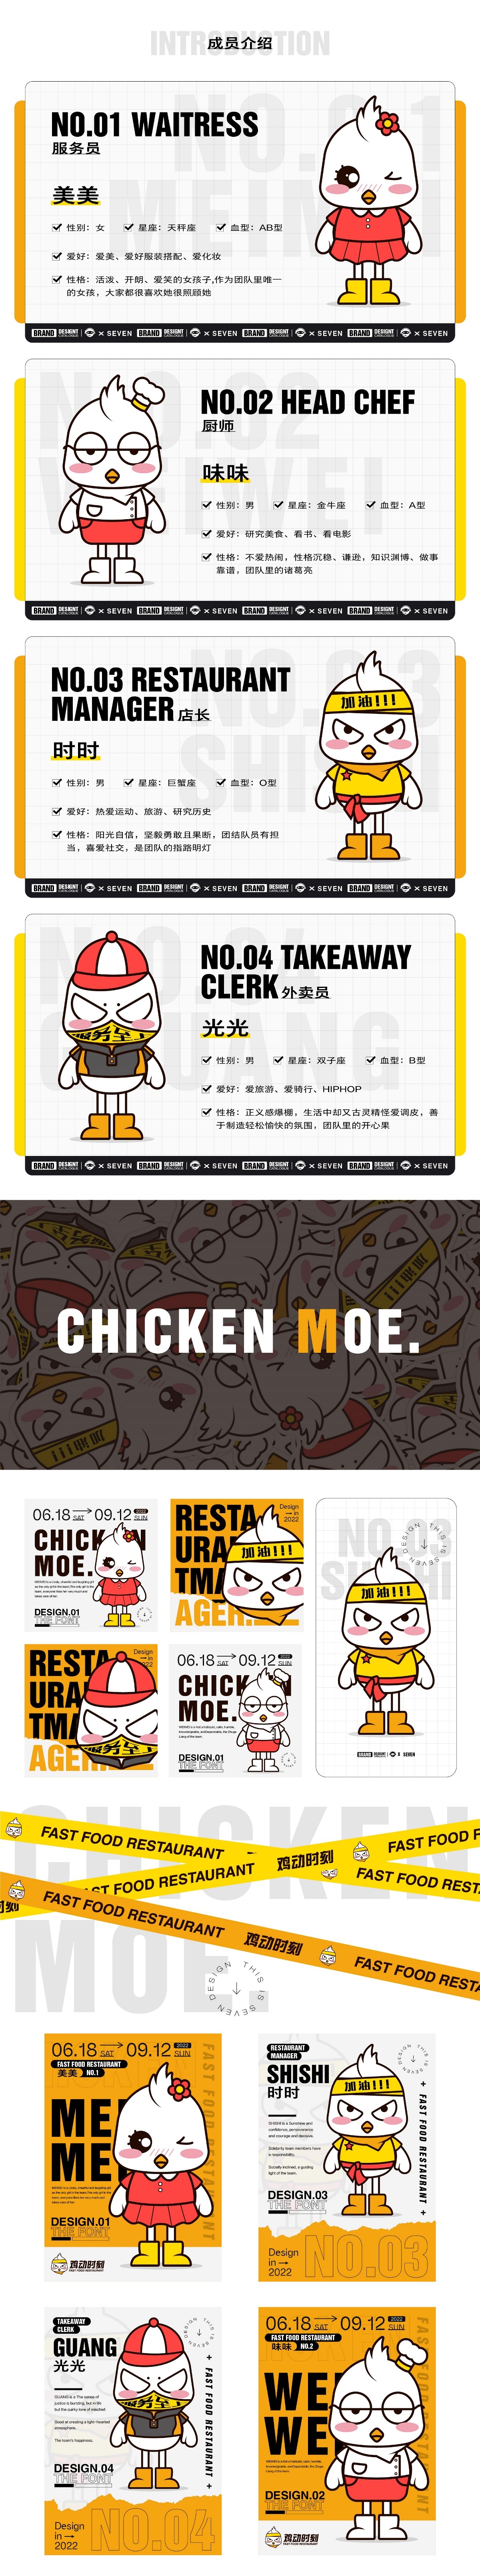 【鸡动时刻】炸鸡快餐厅IP形象设计